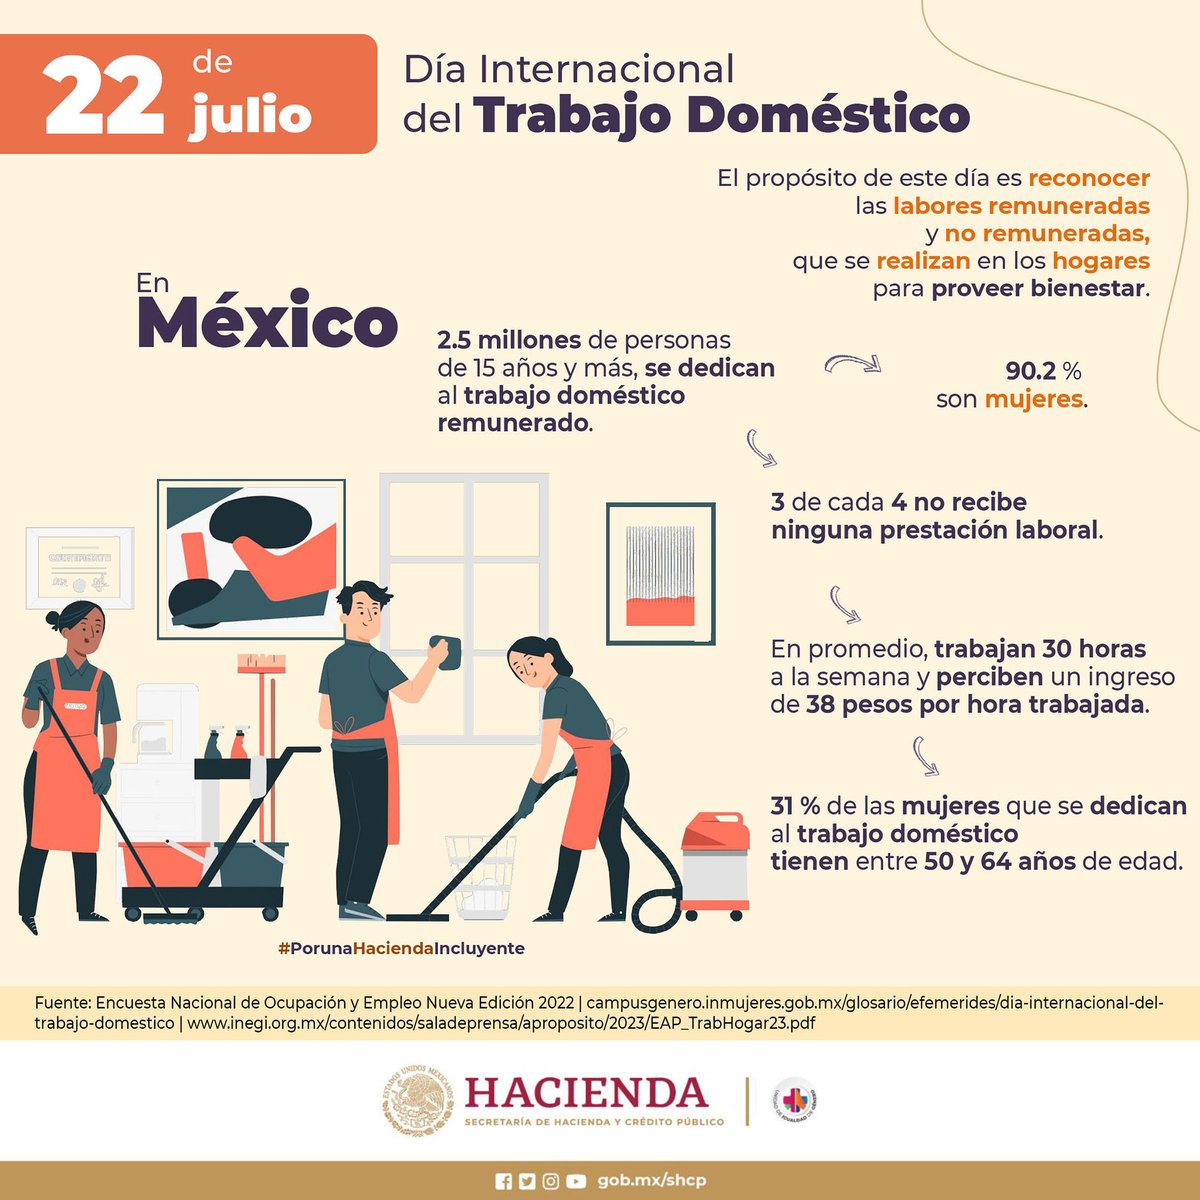 El 22 de julio conmemoramos el Día Mundial del Trabajo Doméstico, el cual busca resignificar y valorar a las personas trabajadoras del hogar.

#EfemérideHacienda 🗓️
#PorUnaHaciendaIncluyente